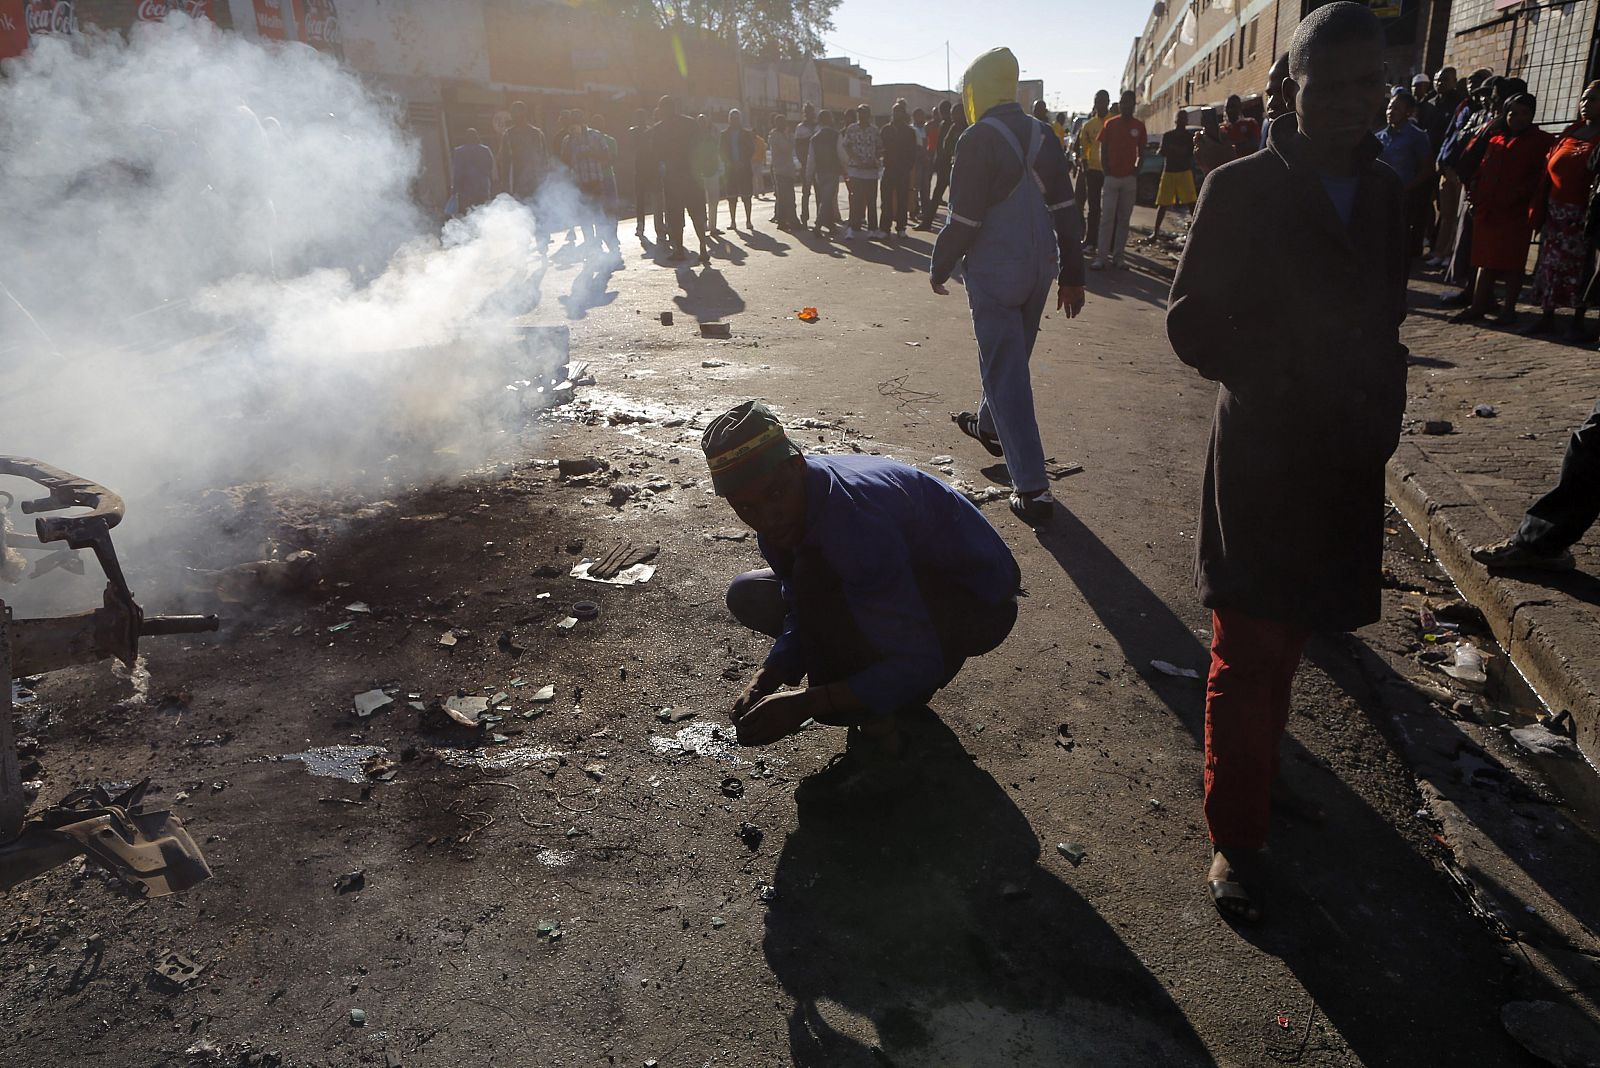 Vecinos partidarios de la expulsión de extranjeros observan un coche incendiado en un nuevo ataque xenófobo registrado en el centro de Johannesburgo (Sudáfrica), el pasado viernes 17 de abril.